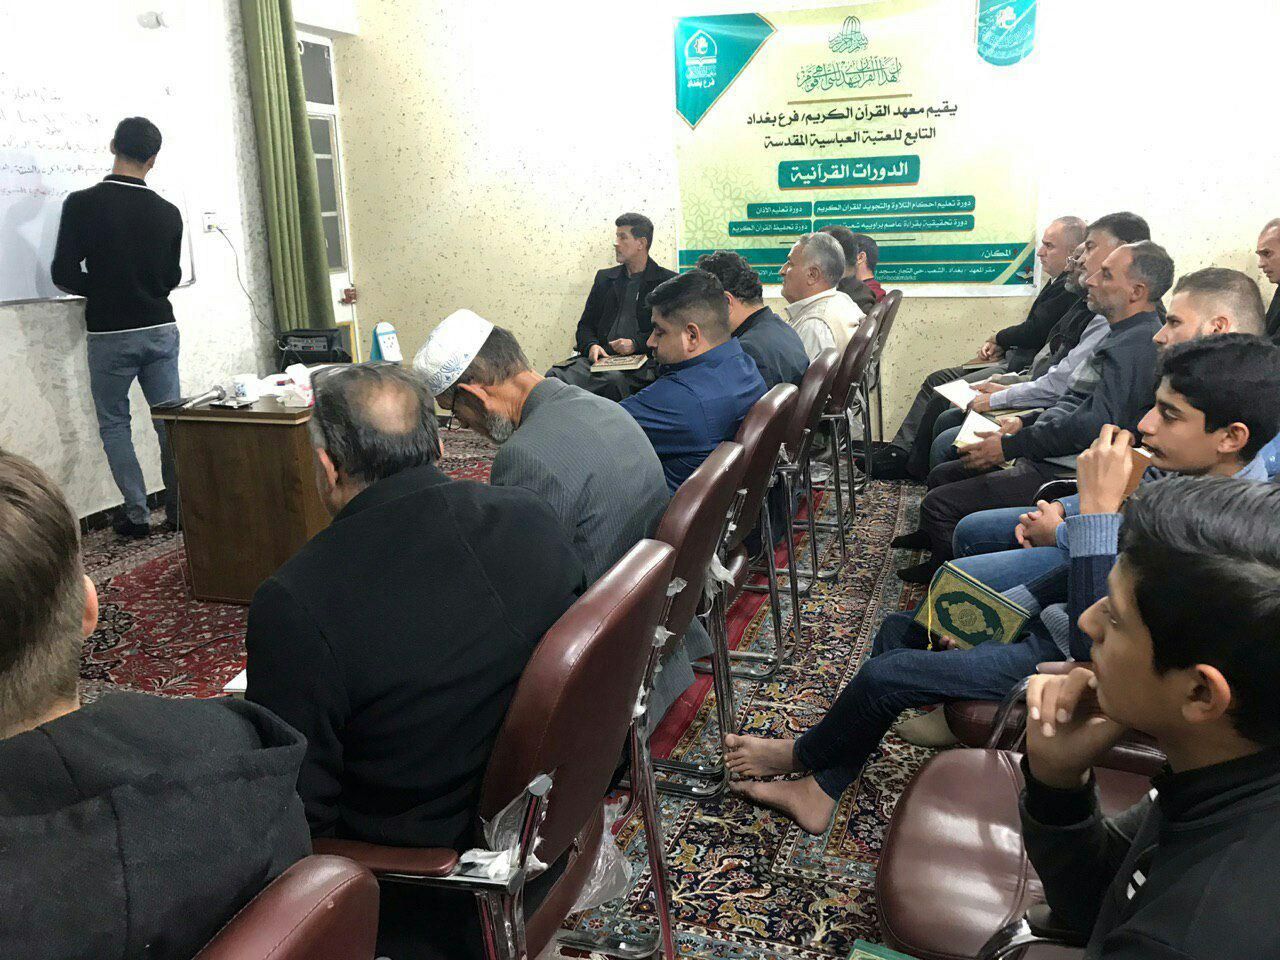 فرع معهد القرآن الكريم في بغداد يطلق مشروع الدورات القرآنية التخصصية